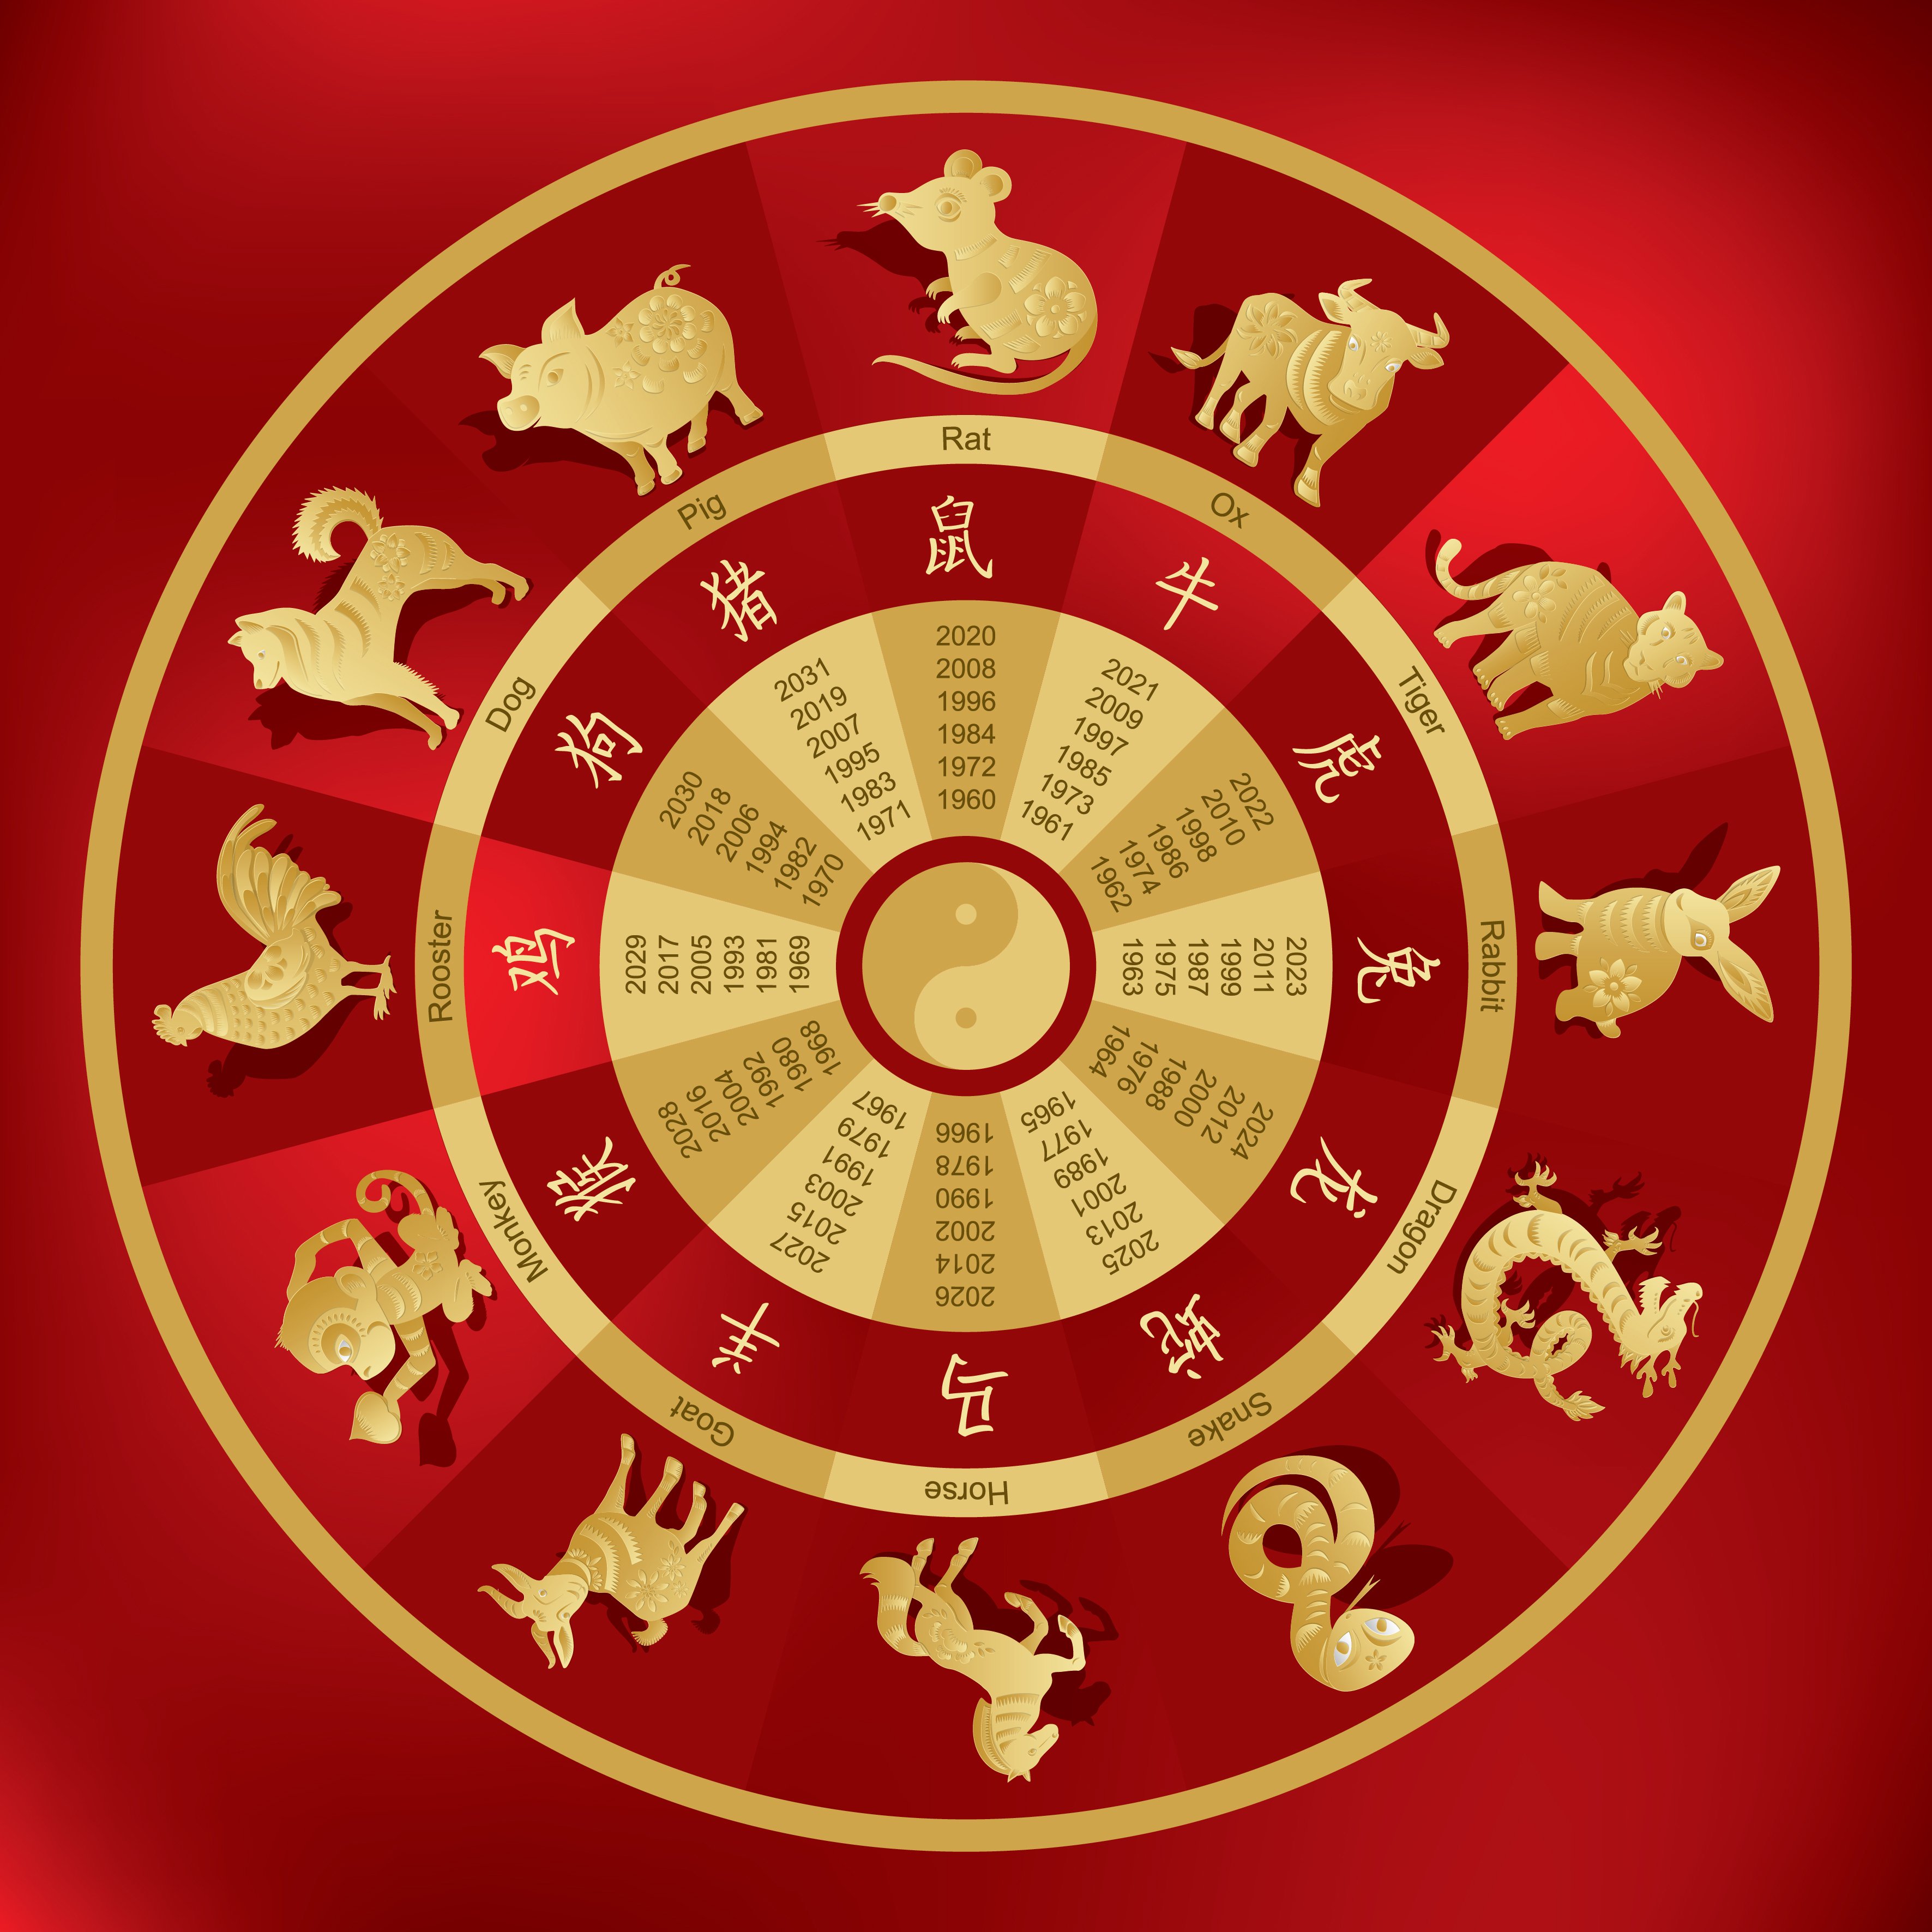 Signos del horóscopo chino || Fuente: Shutterstock